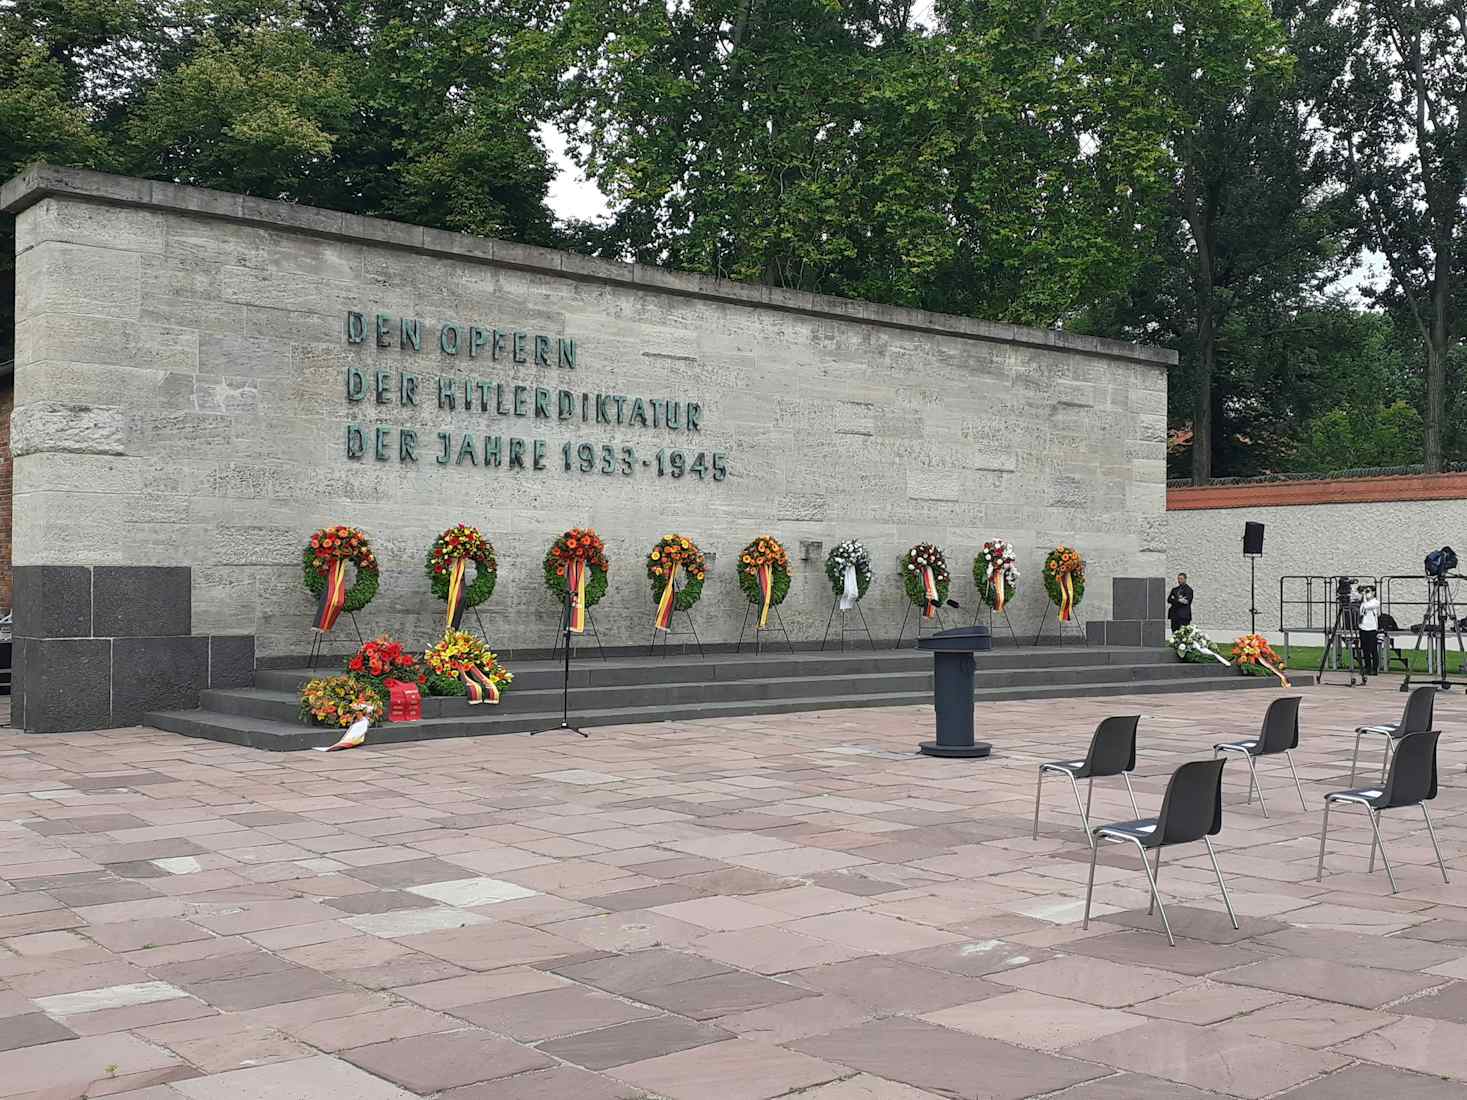 Gedenkfeier in der Gedenkstätte Plötzensee / 76. Jahrestag / 20. Juli 2020